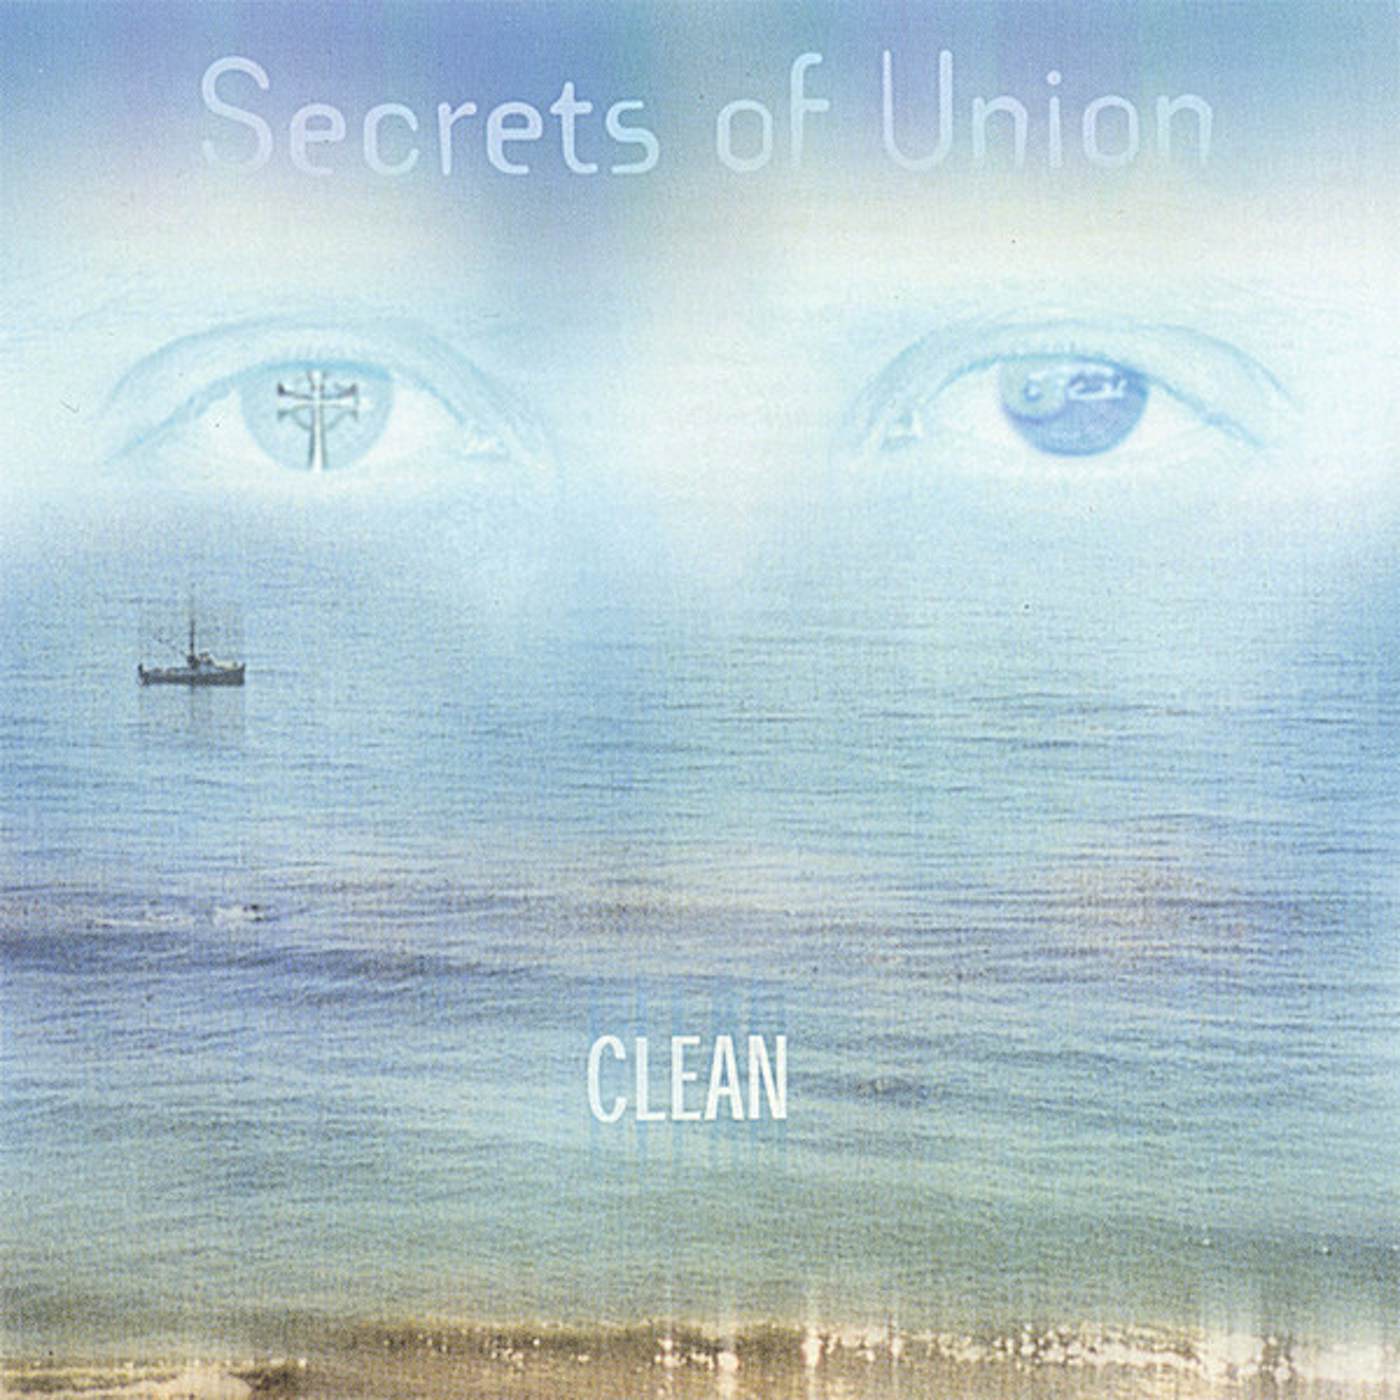 Clean SECRETS OF UNION CD